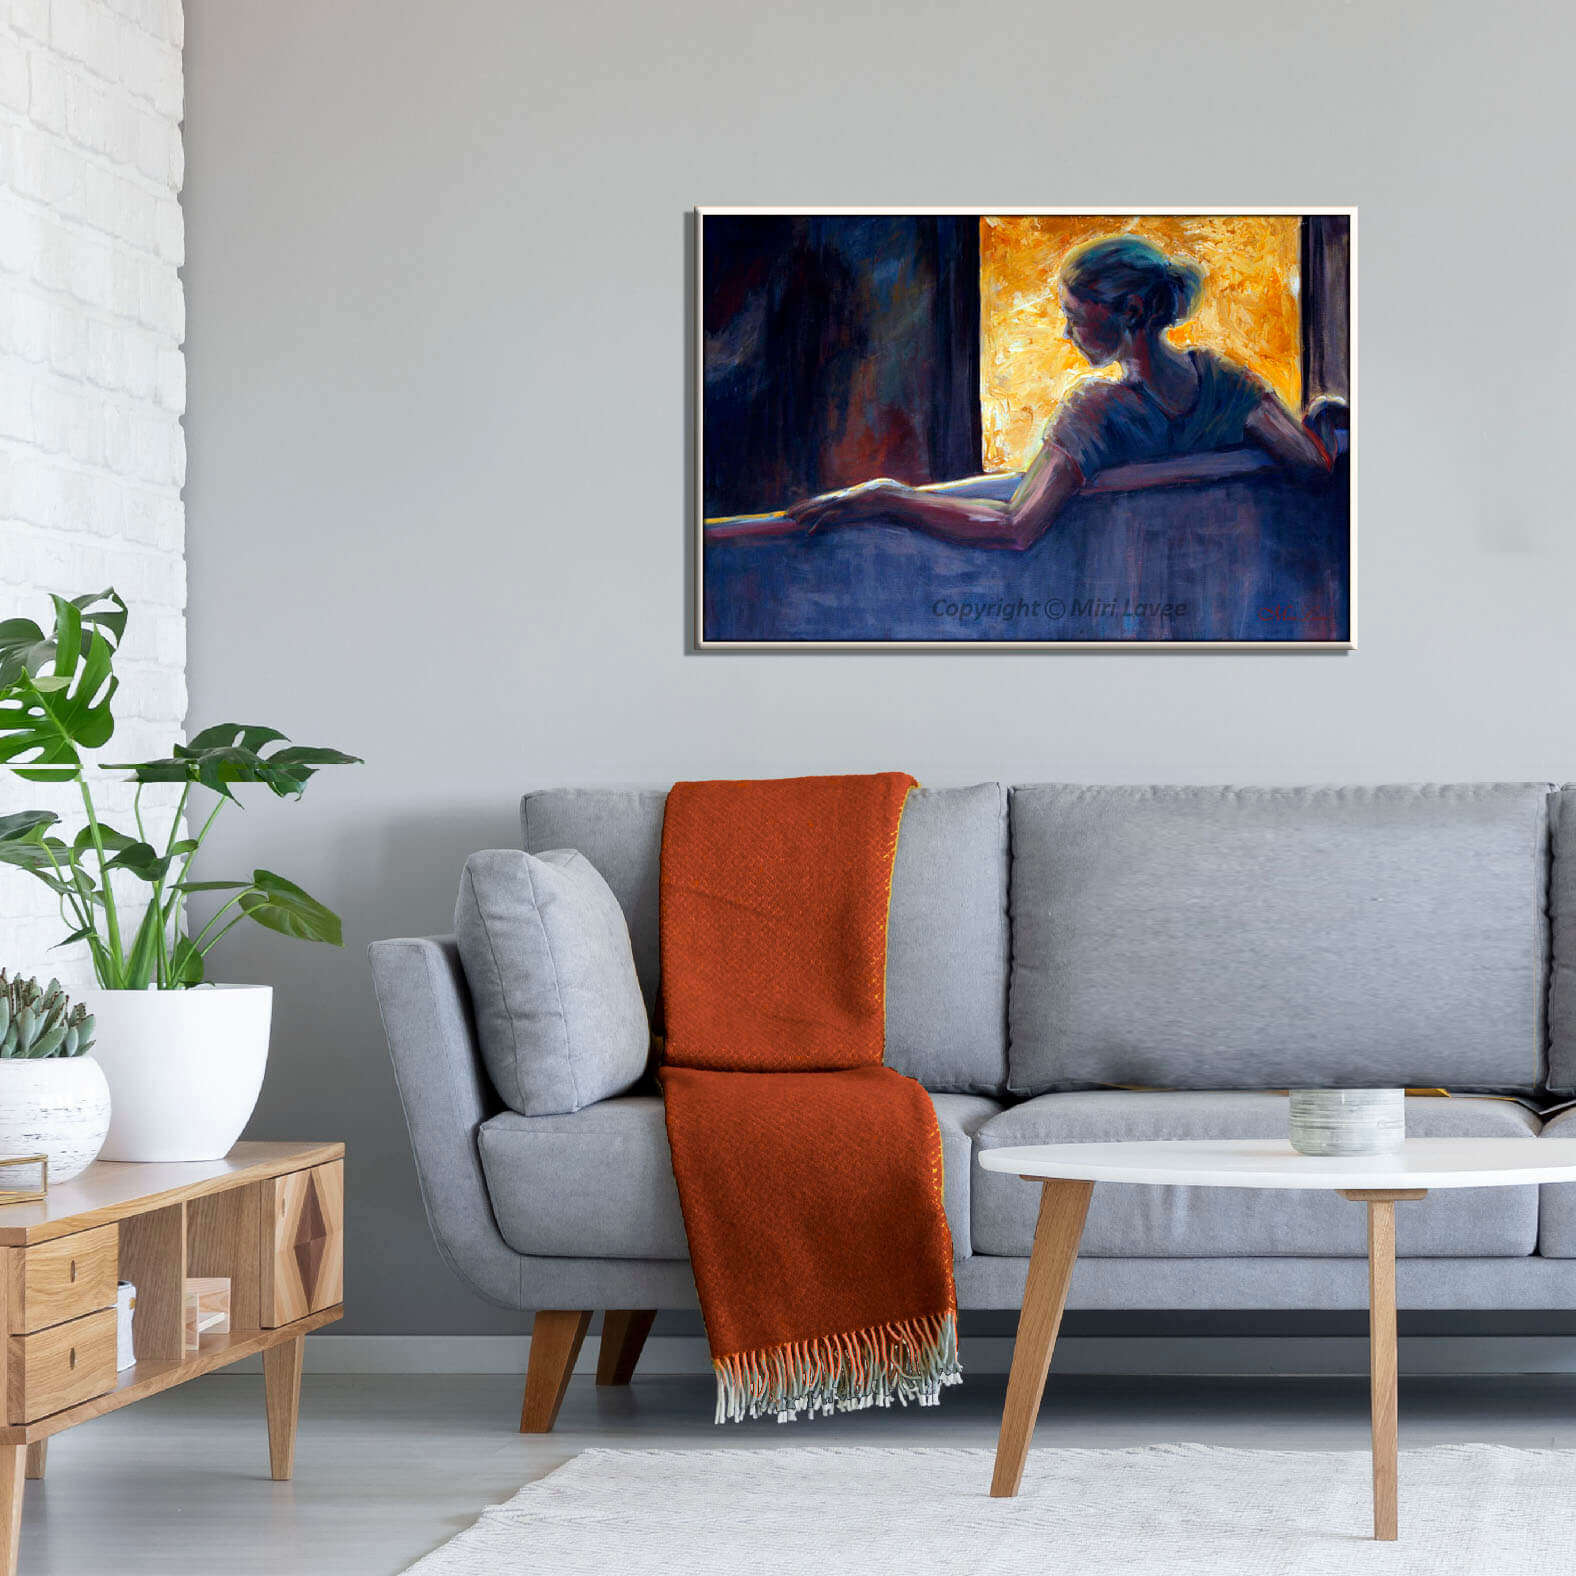 ציור דמות אישה בגוונים כחולים יושבת מול חלון מואר תמונה בסלון מעל הספה ציירת מירי לביא